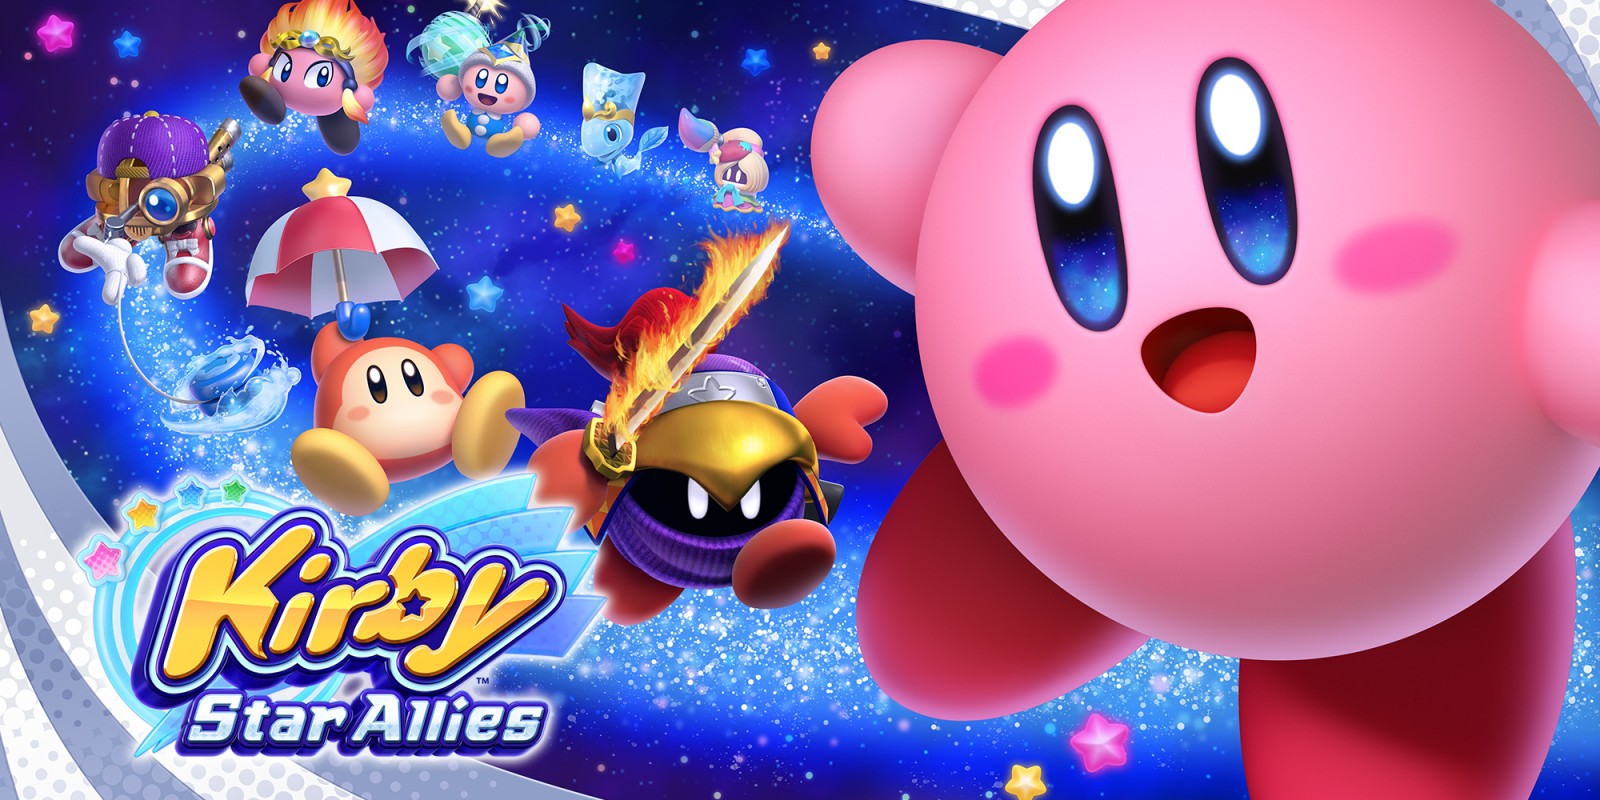 Kirby Star Allies (Nintendo Switch) H2x1_NSwitch_KirbyStarAllies_image1600w